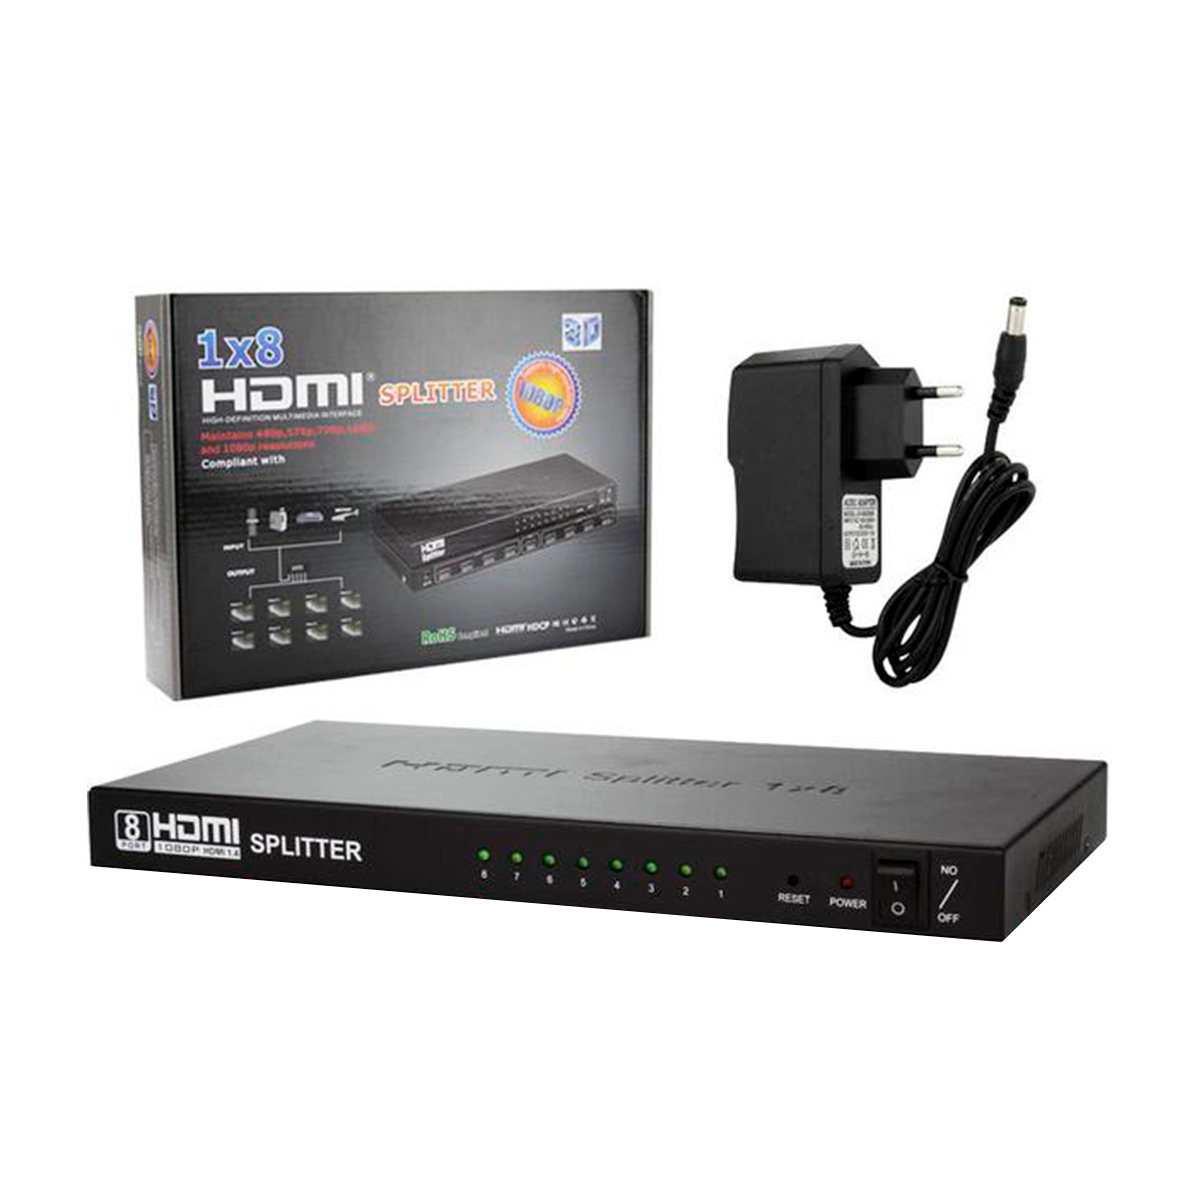 Multiplicador de Vídeo - Vídeo Splitter - 8 saídas HDMI - Compatível com HDMI 1.4, HDCP 1.2 e 3D - HUB0031